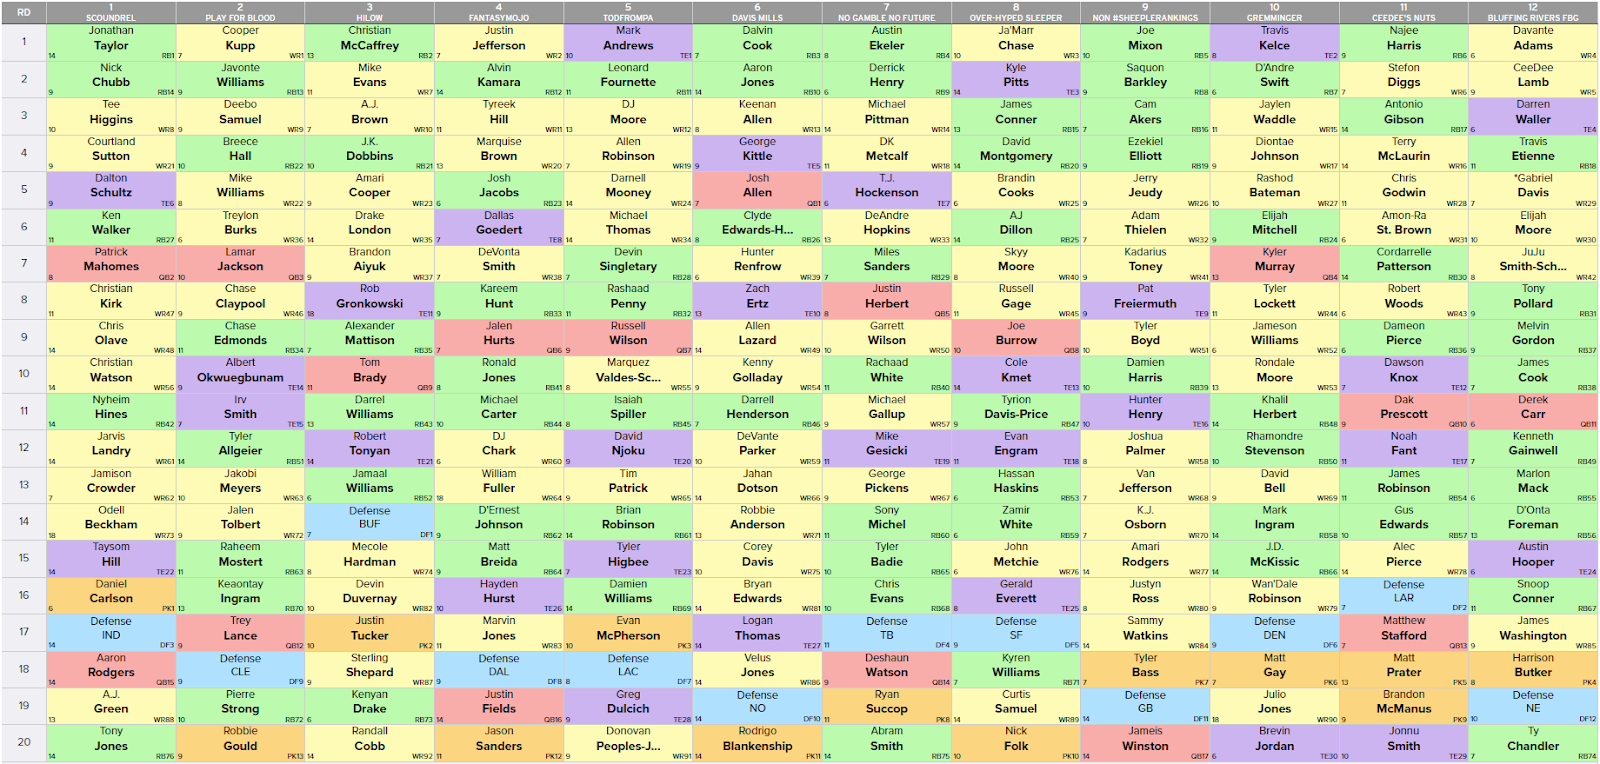 the best draft picks for fantasy football